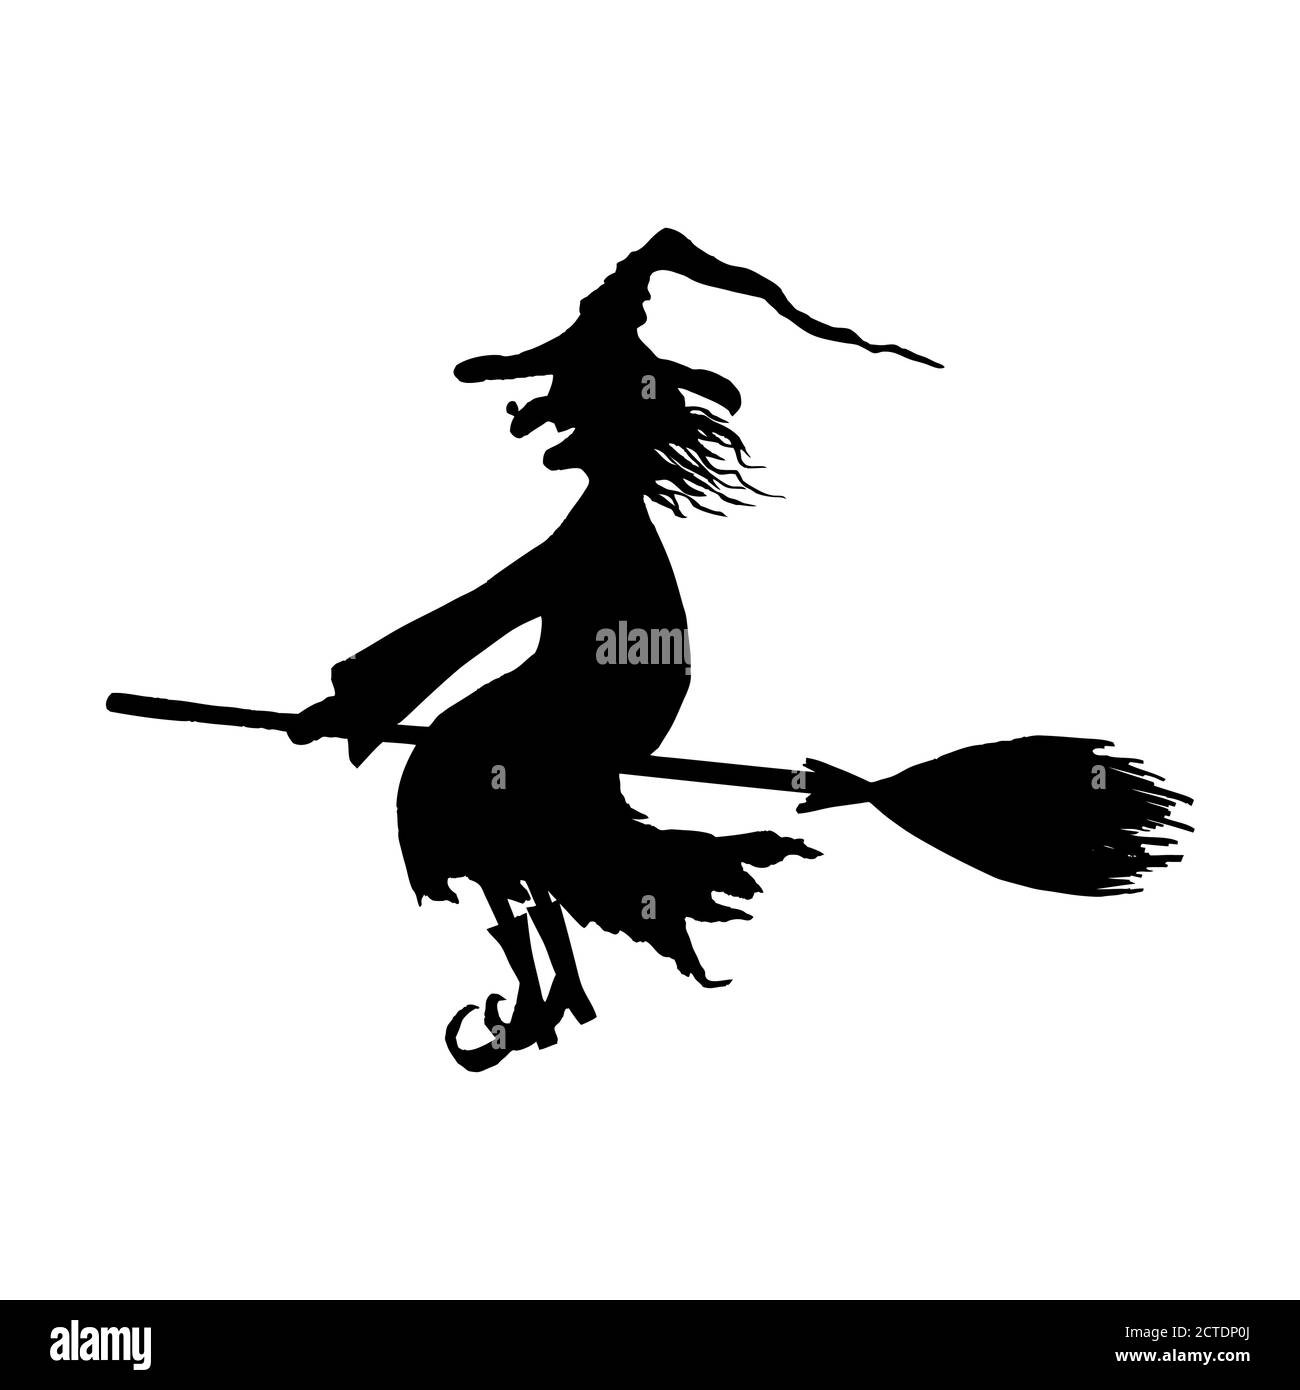 Halloween Hexe. Silhouette von lächelnden böse Hexe fliegen auf Broomstick mit Hut mit einer Warze auf der Nase isoliert auf weißem Hintergrund. Symbol illustrat Stock Vektor